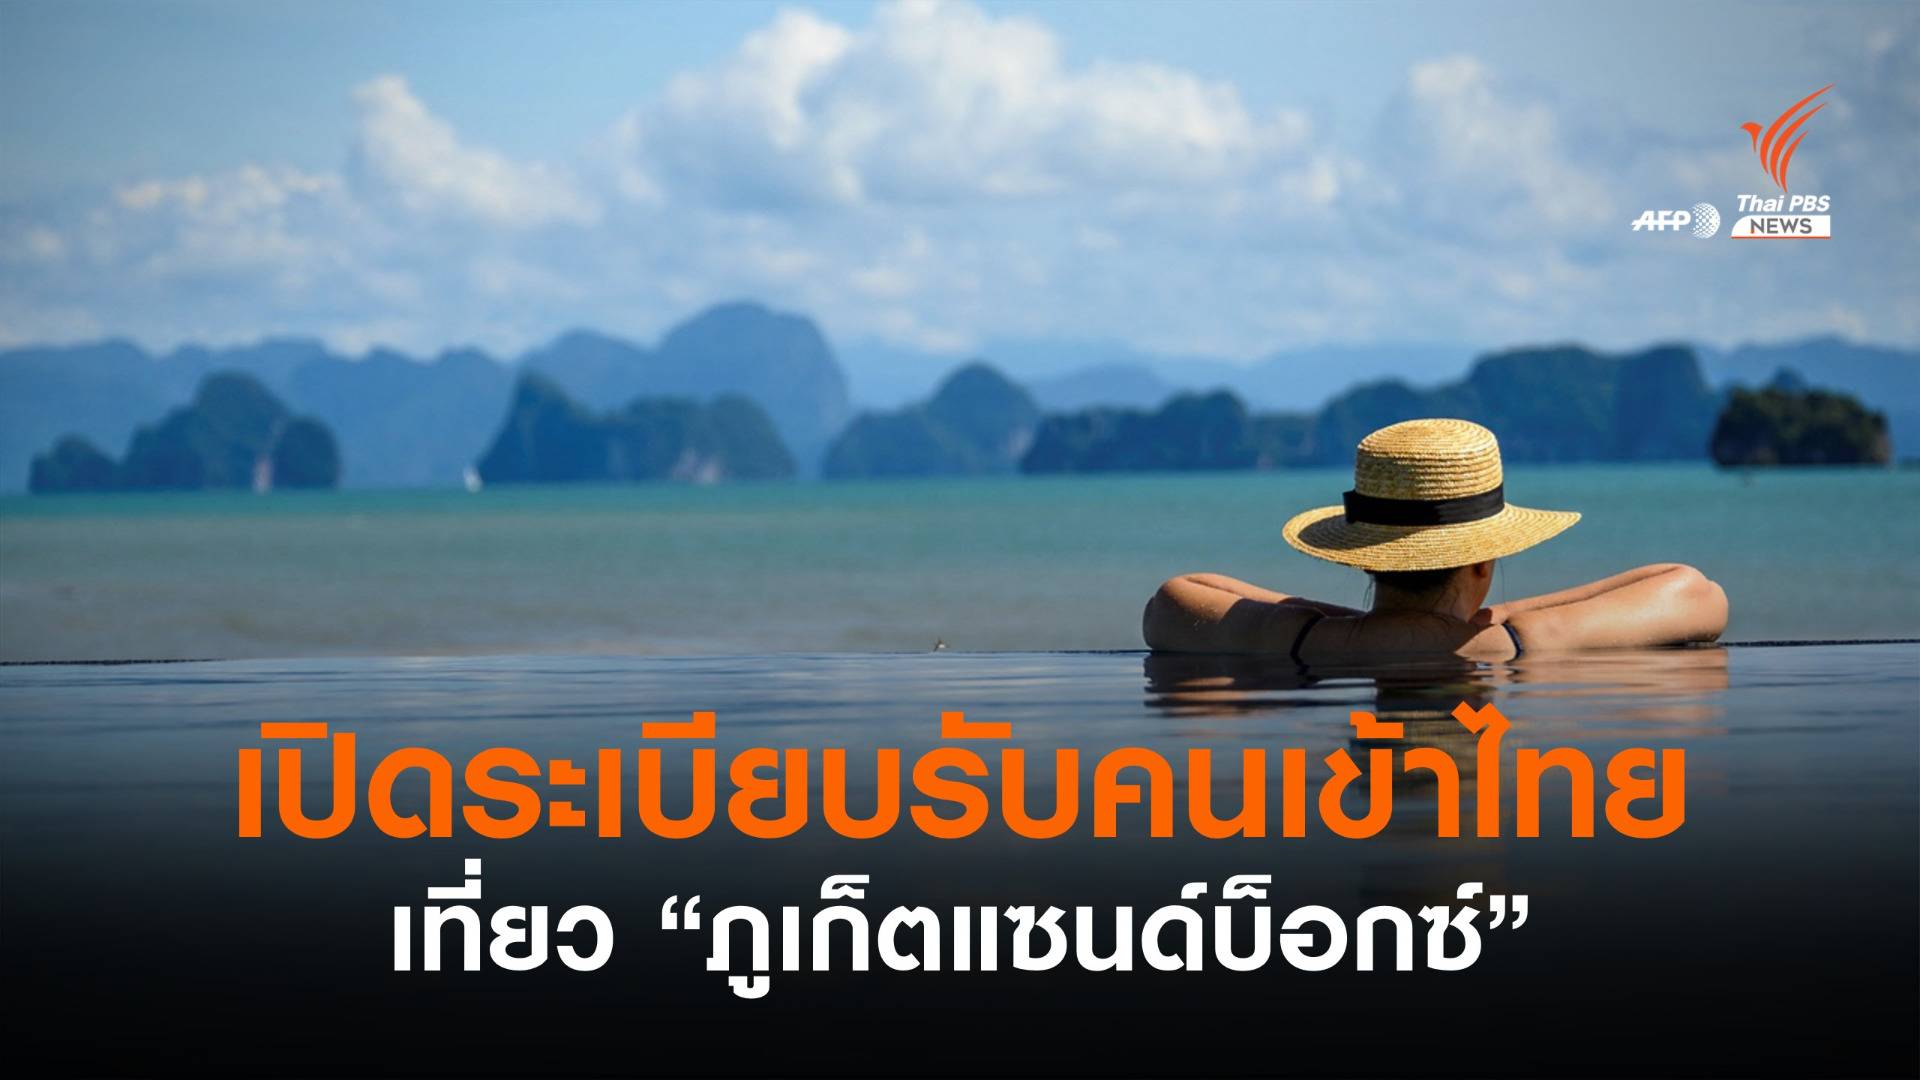 กต.เปิดระเบียบรับผู้เดินทางเข้าไทยเที่ยว "ภูเก็ตแซนด์บ็อกซ์"